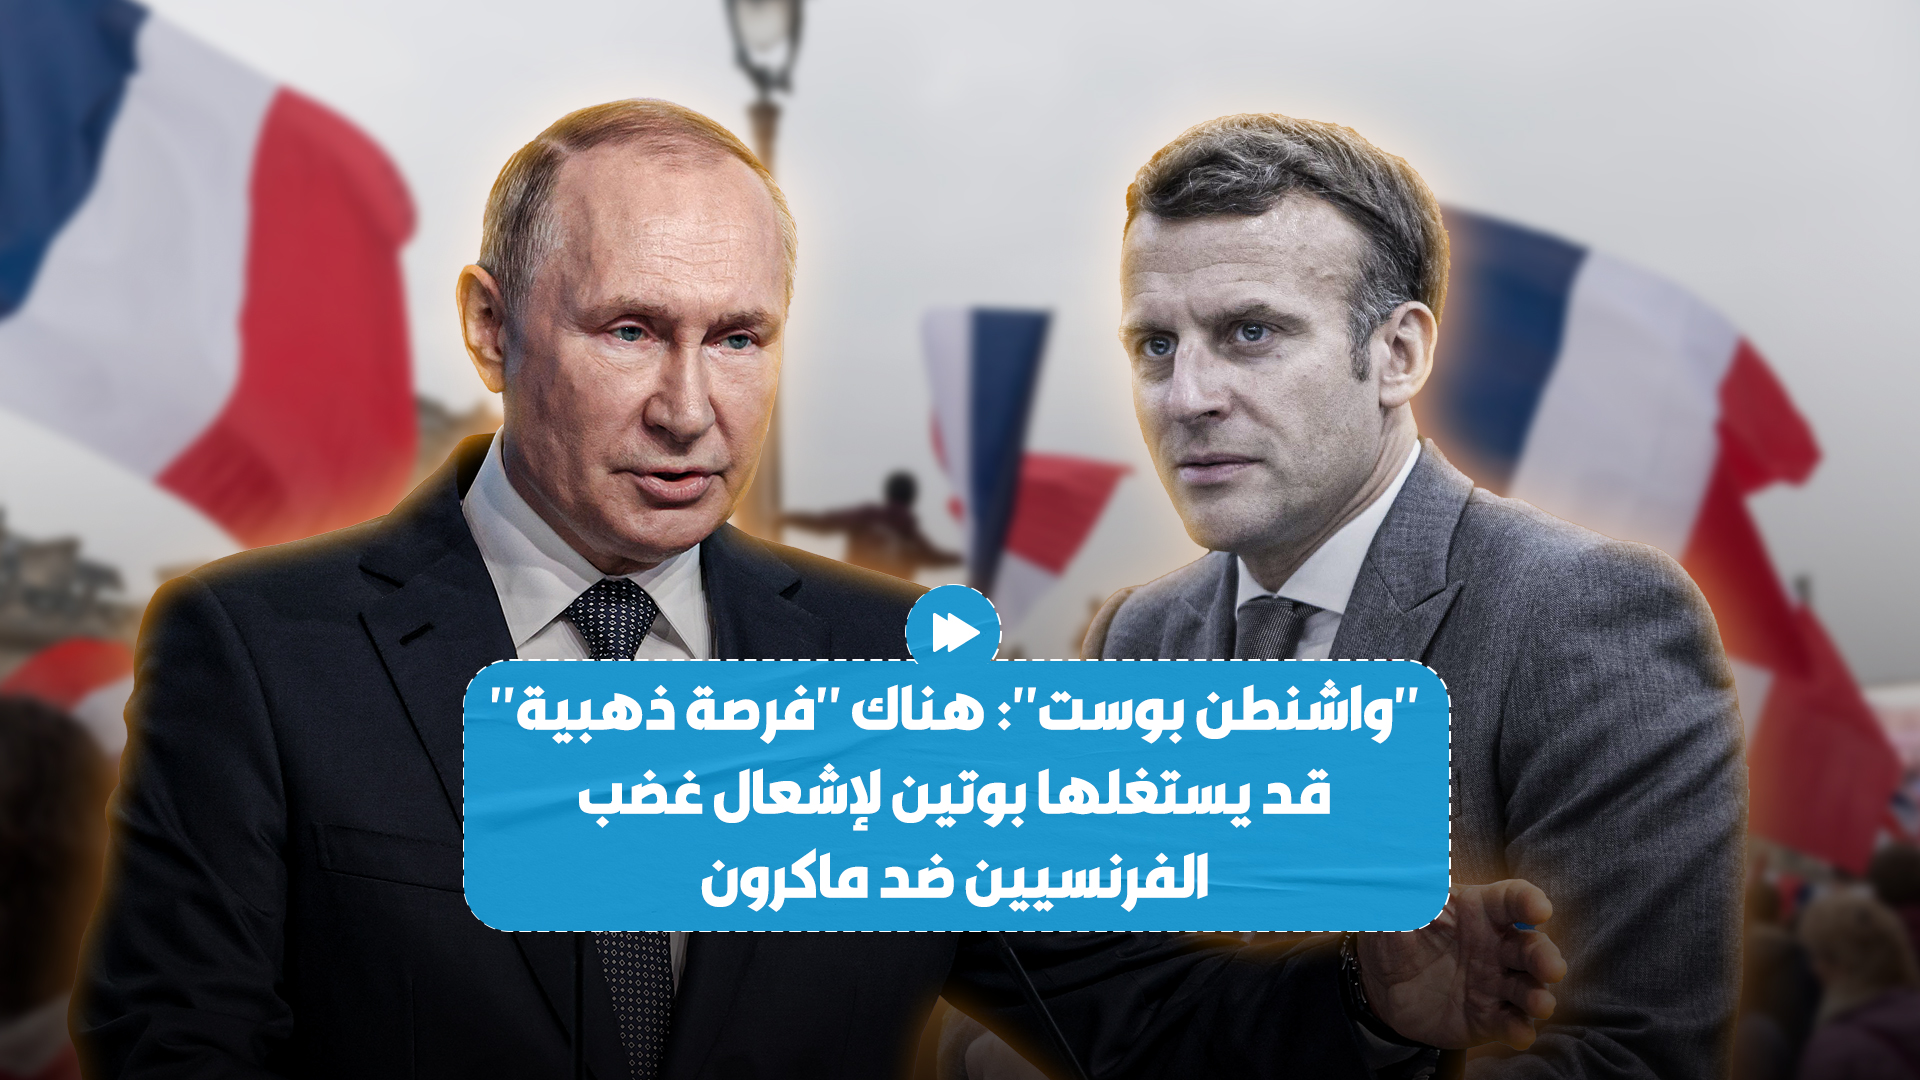 صحيفة أمريكية تتحدث عن "فرصة من ذهب" قد يستغلها الرئيس الروسي لتفـ*ـجير غضب الفرنسيين ضد رئيس بلادهم